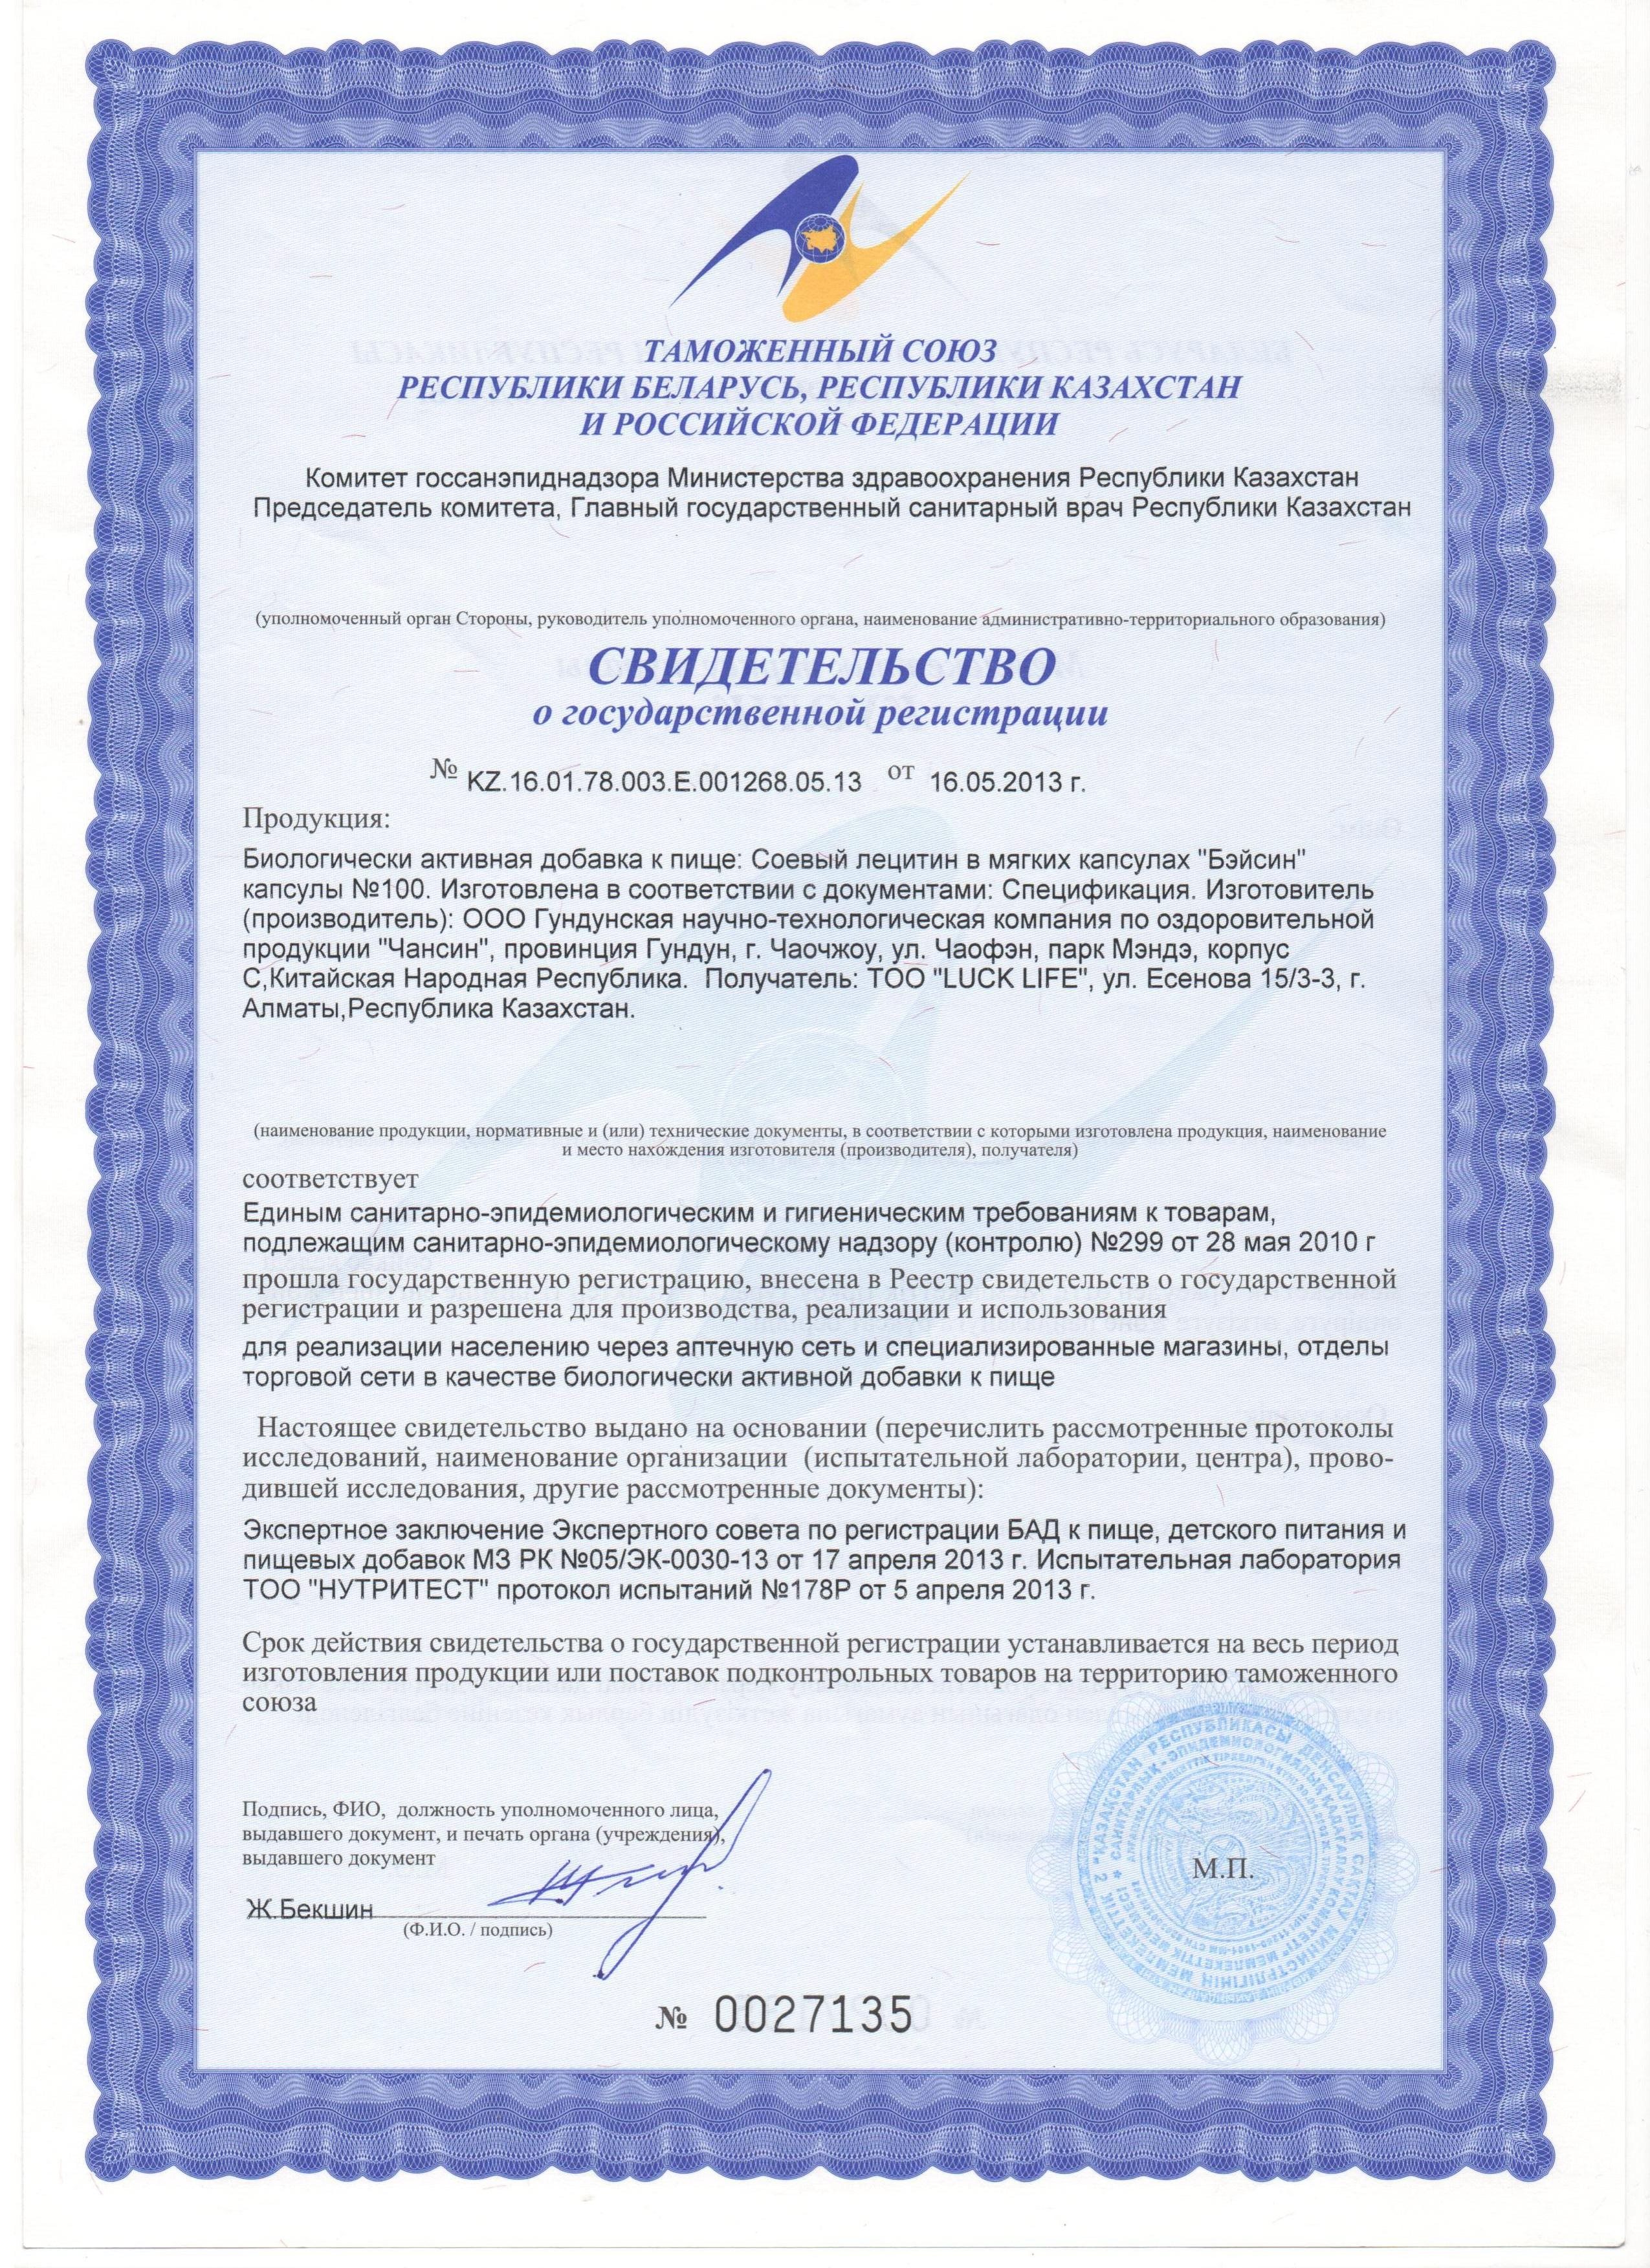 Сертификат на Соевый лецитин в мягких капсулах